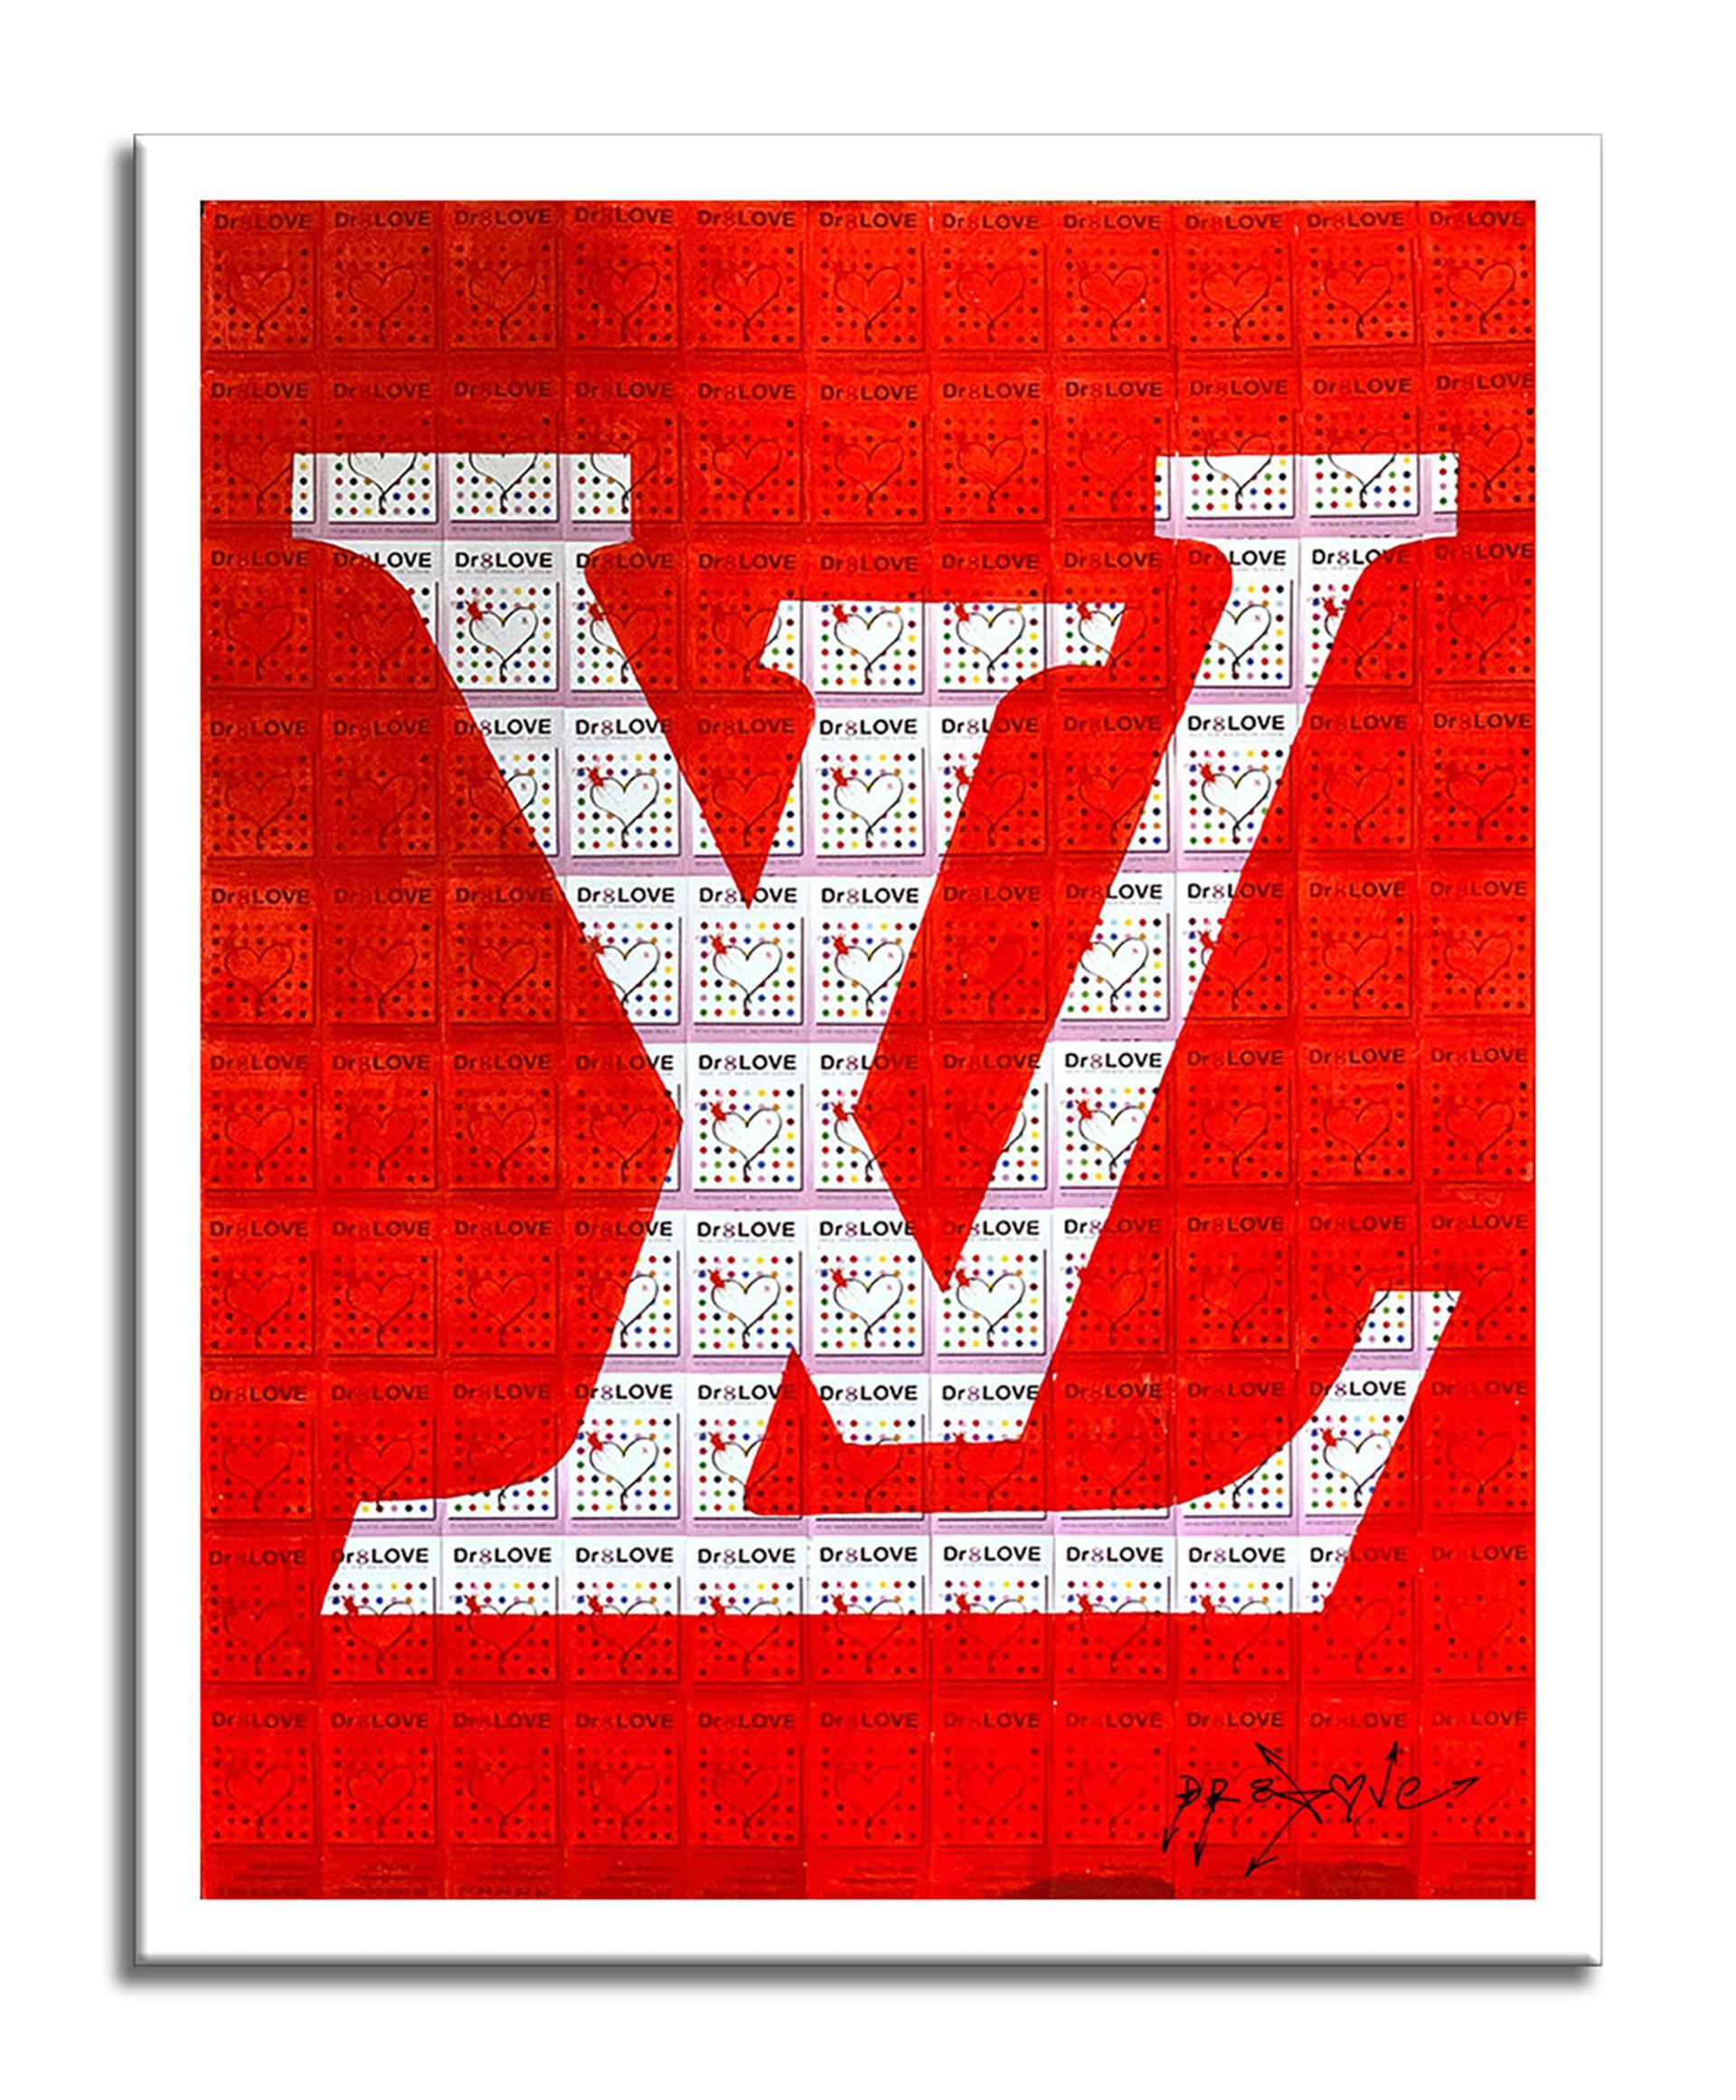 LV Red Art Bath Towel by DG Design - Pixels